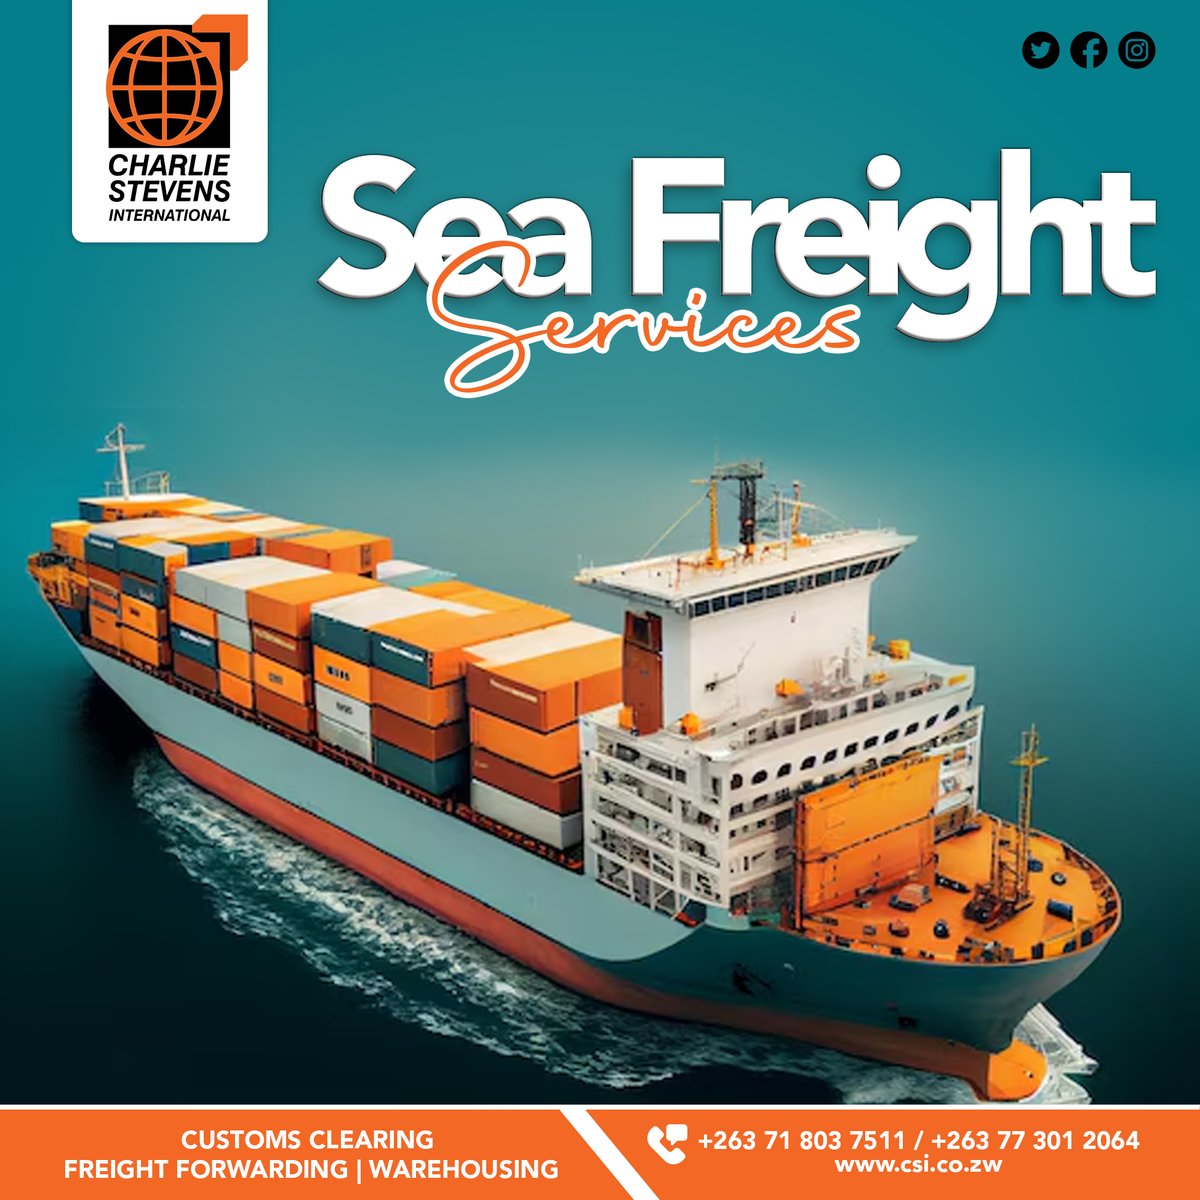 Sea Freight Services.

#logistics #seafreight #freightforwading